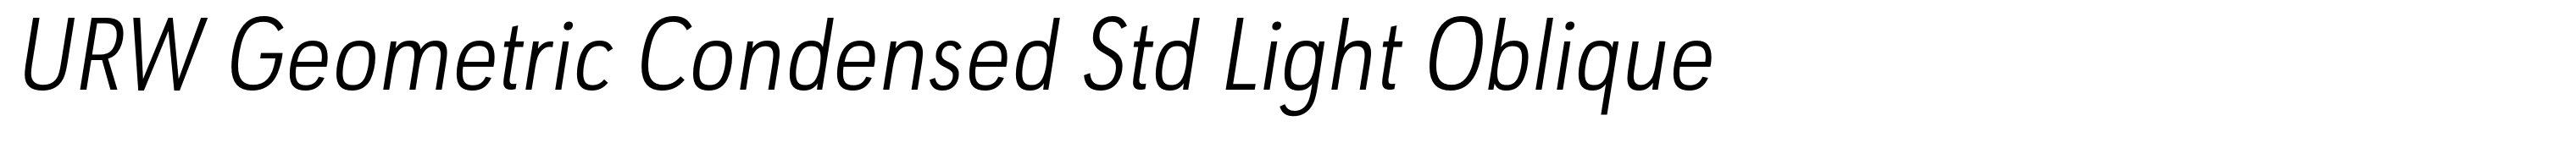 URW Geometric Condensed Std Light Oblique